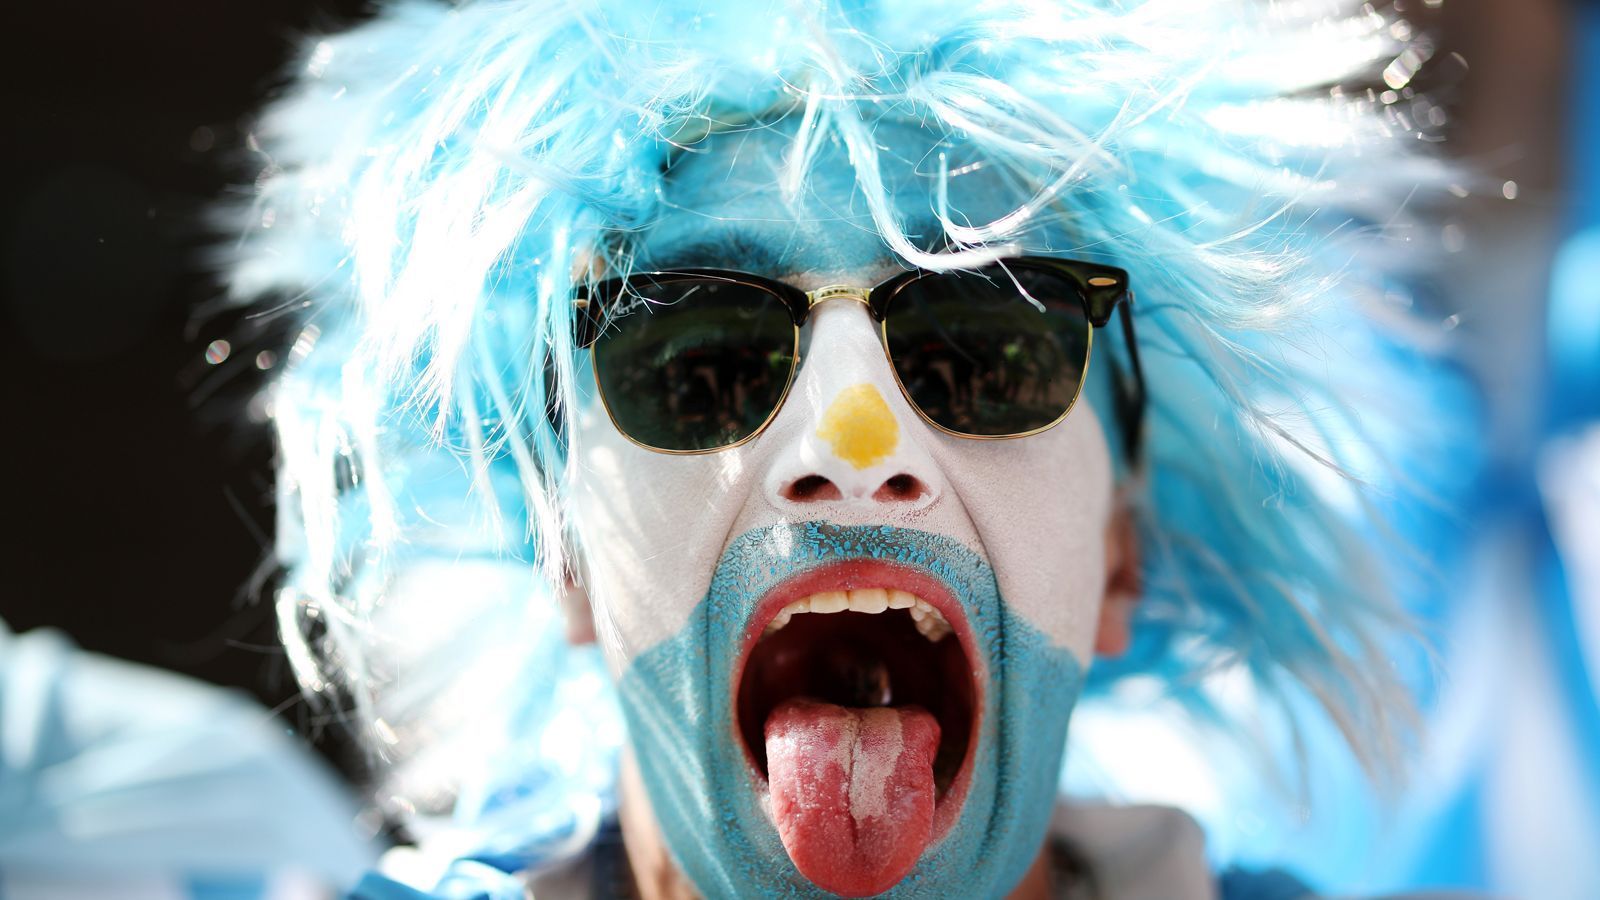 
                <strong>Fan aus Argentinien</strong><br>
                Achtung, nicht verwechseln! Dieser glühende Fan ist Anhänger der Argentinier - auch wenn die blaue Farbe der Uruguays ähnelt.
              